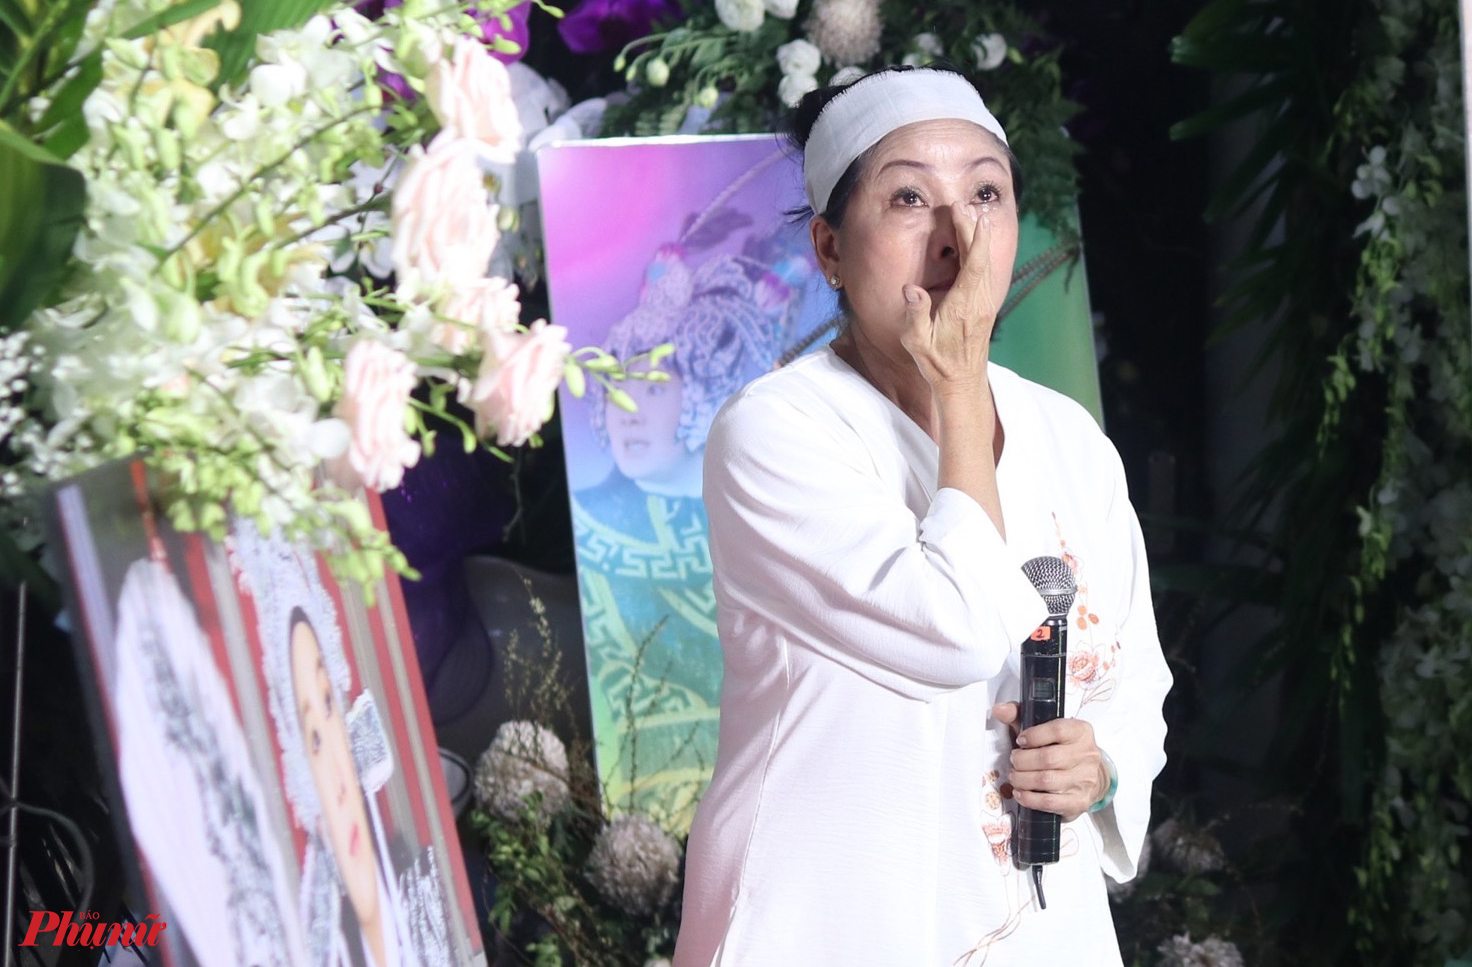 Nghệ sĩ Hồng Nhung khóc khi hát tưởng nhớ anh trai. Những ngày qua, bà túc trực tại tang lễ, cùng gia đình lo hậu sự cho người anh thương yêu.